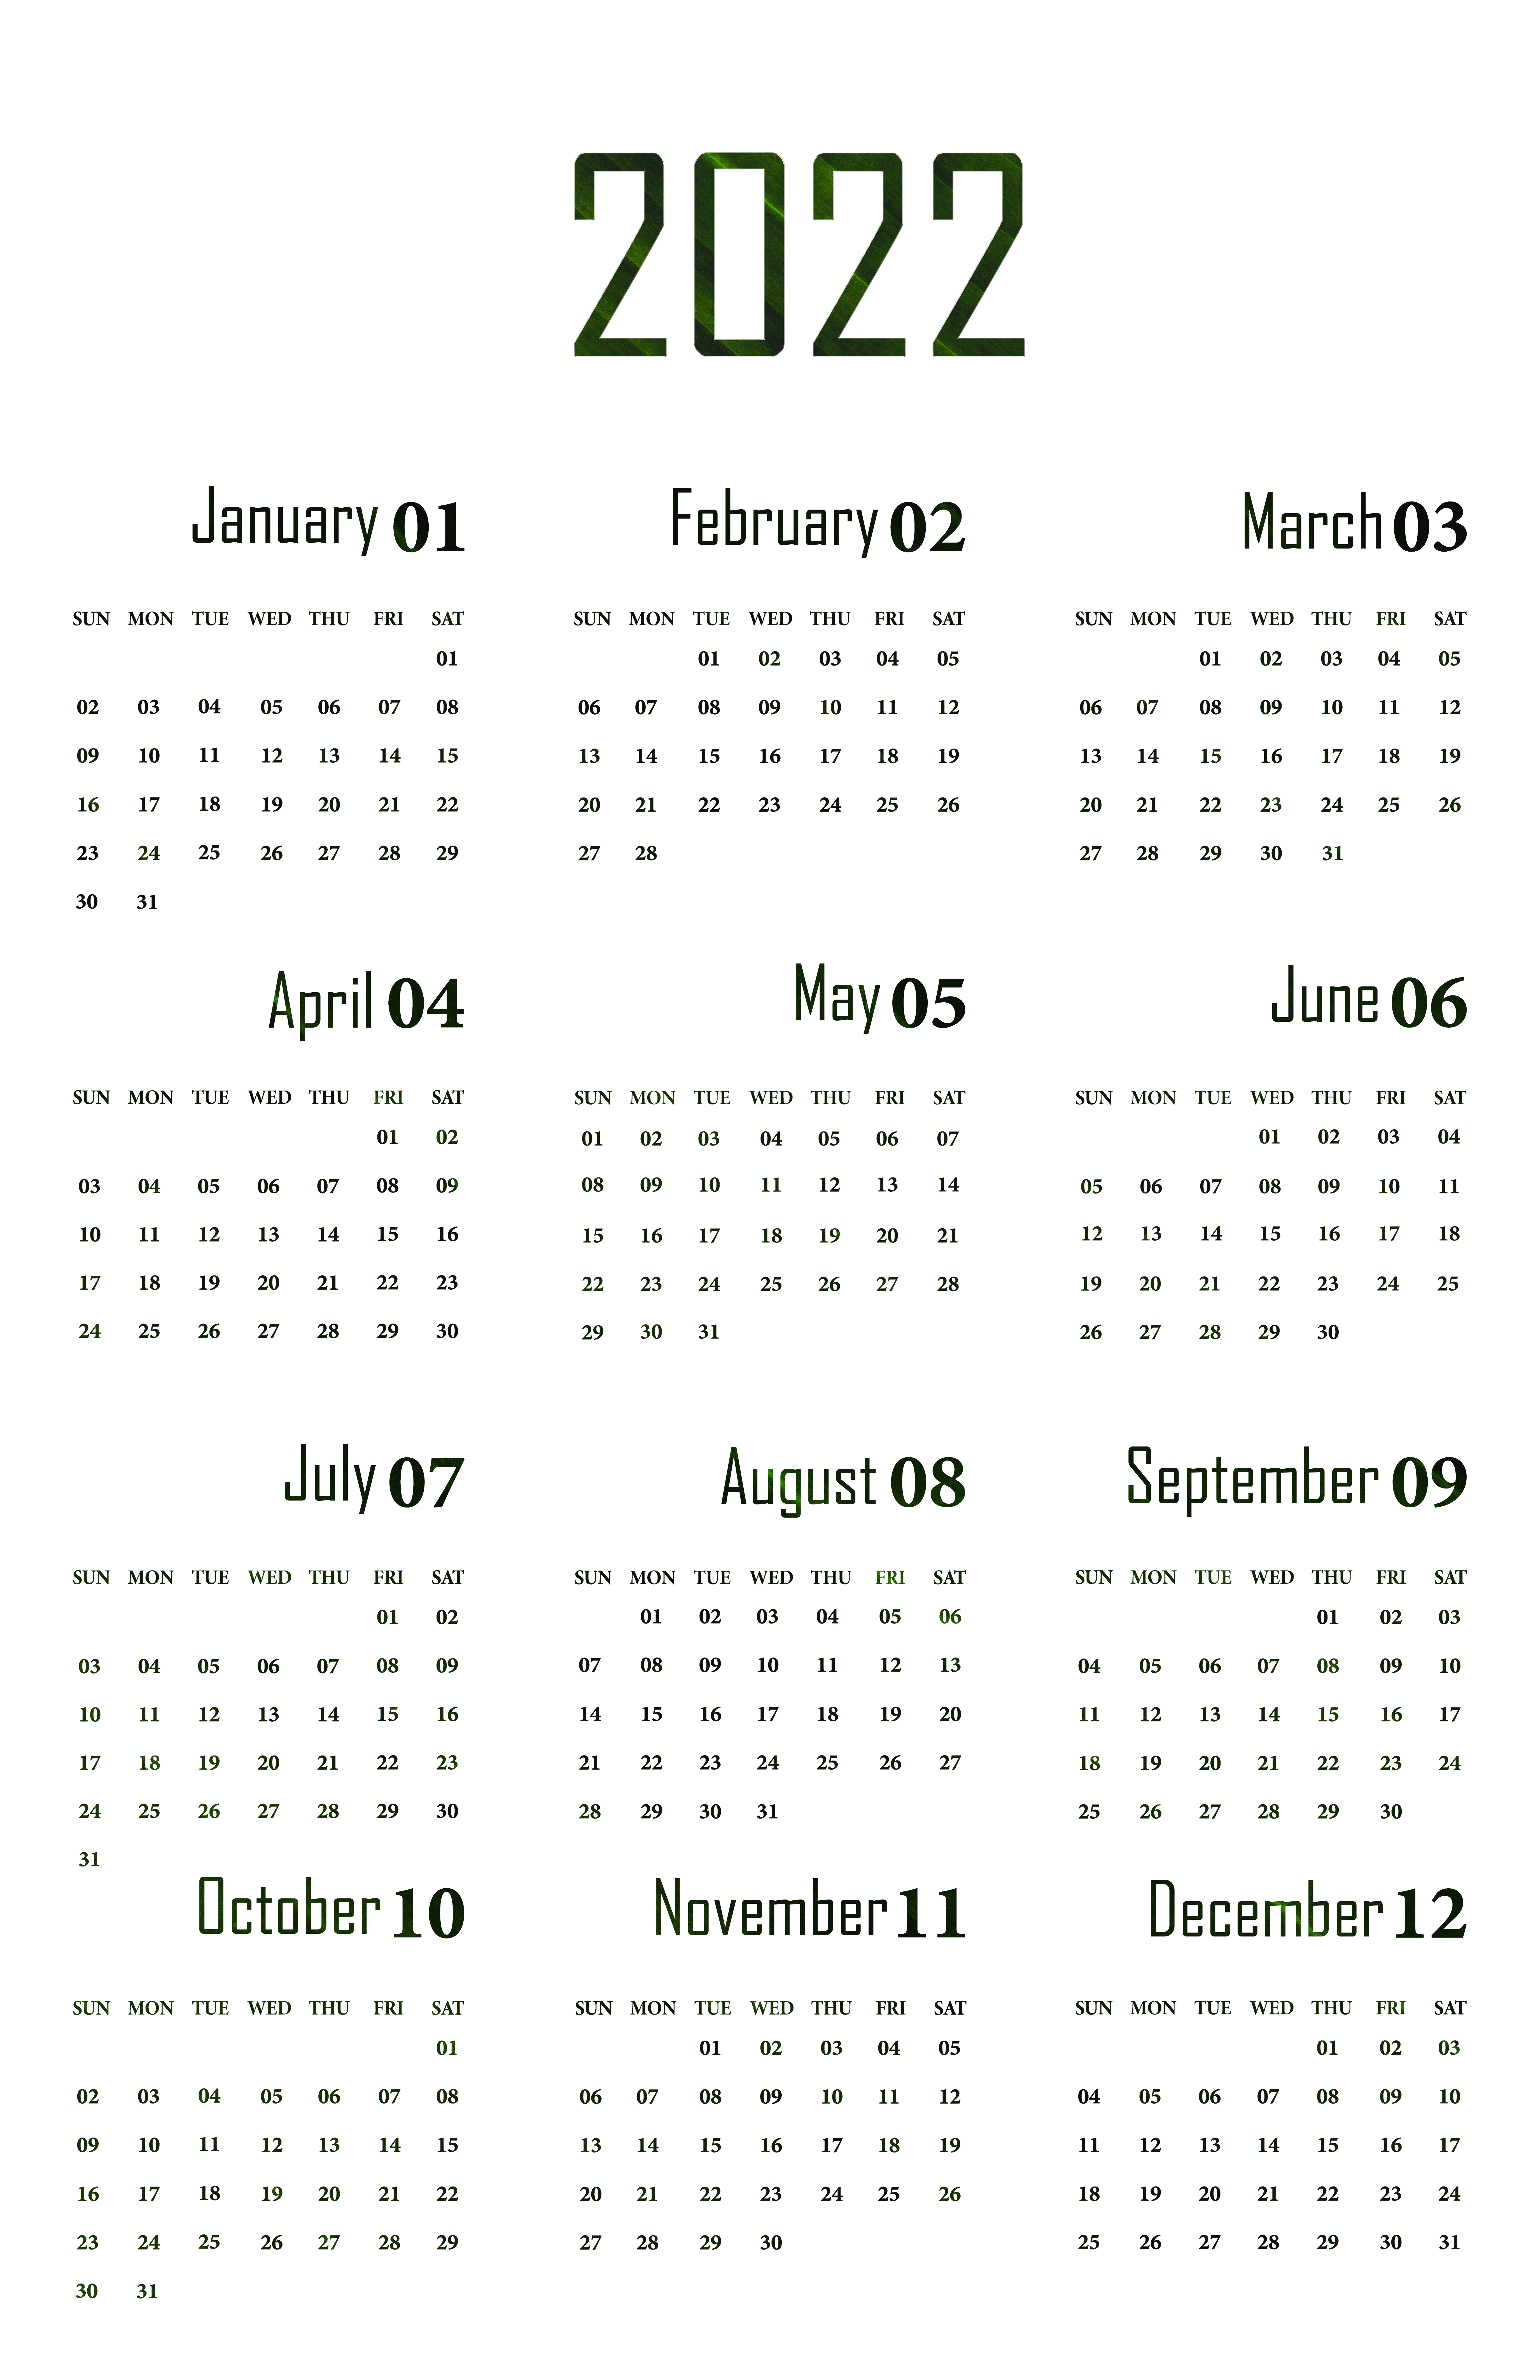 Calendar 2022 PNG Image Transparent